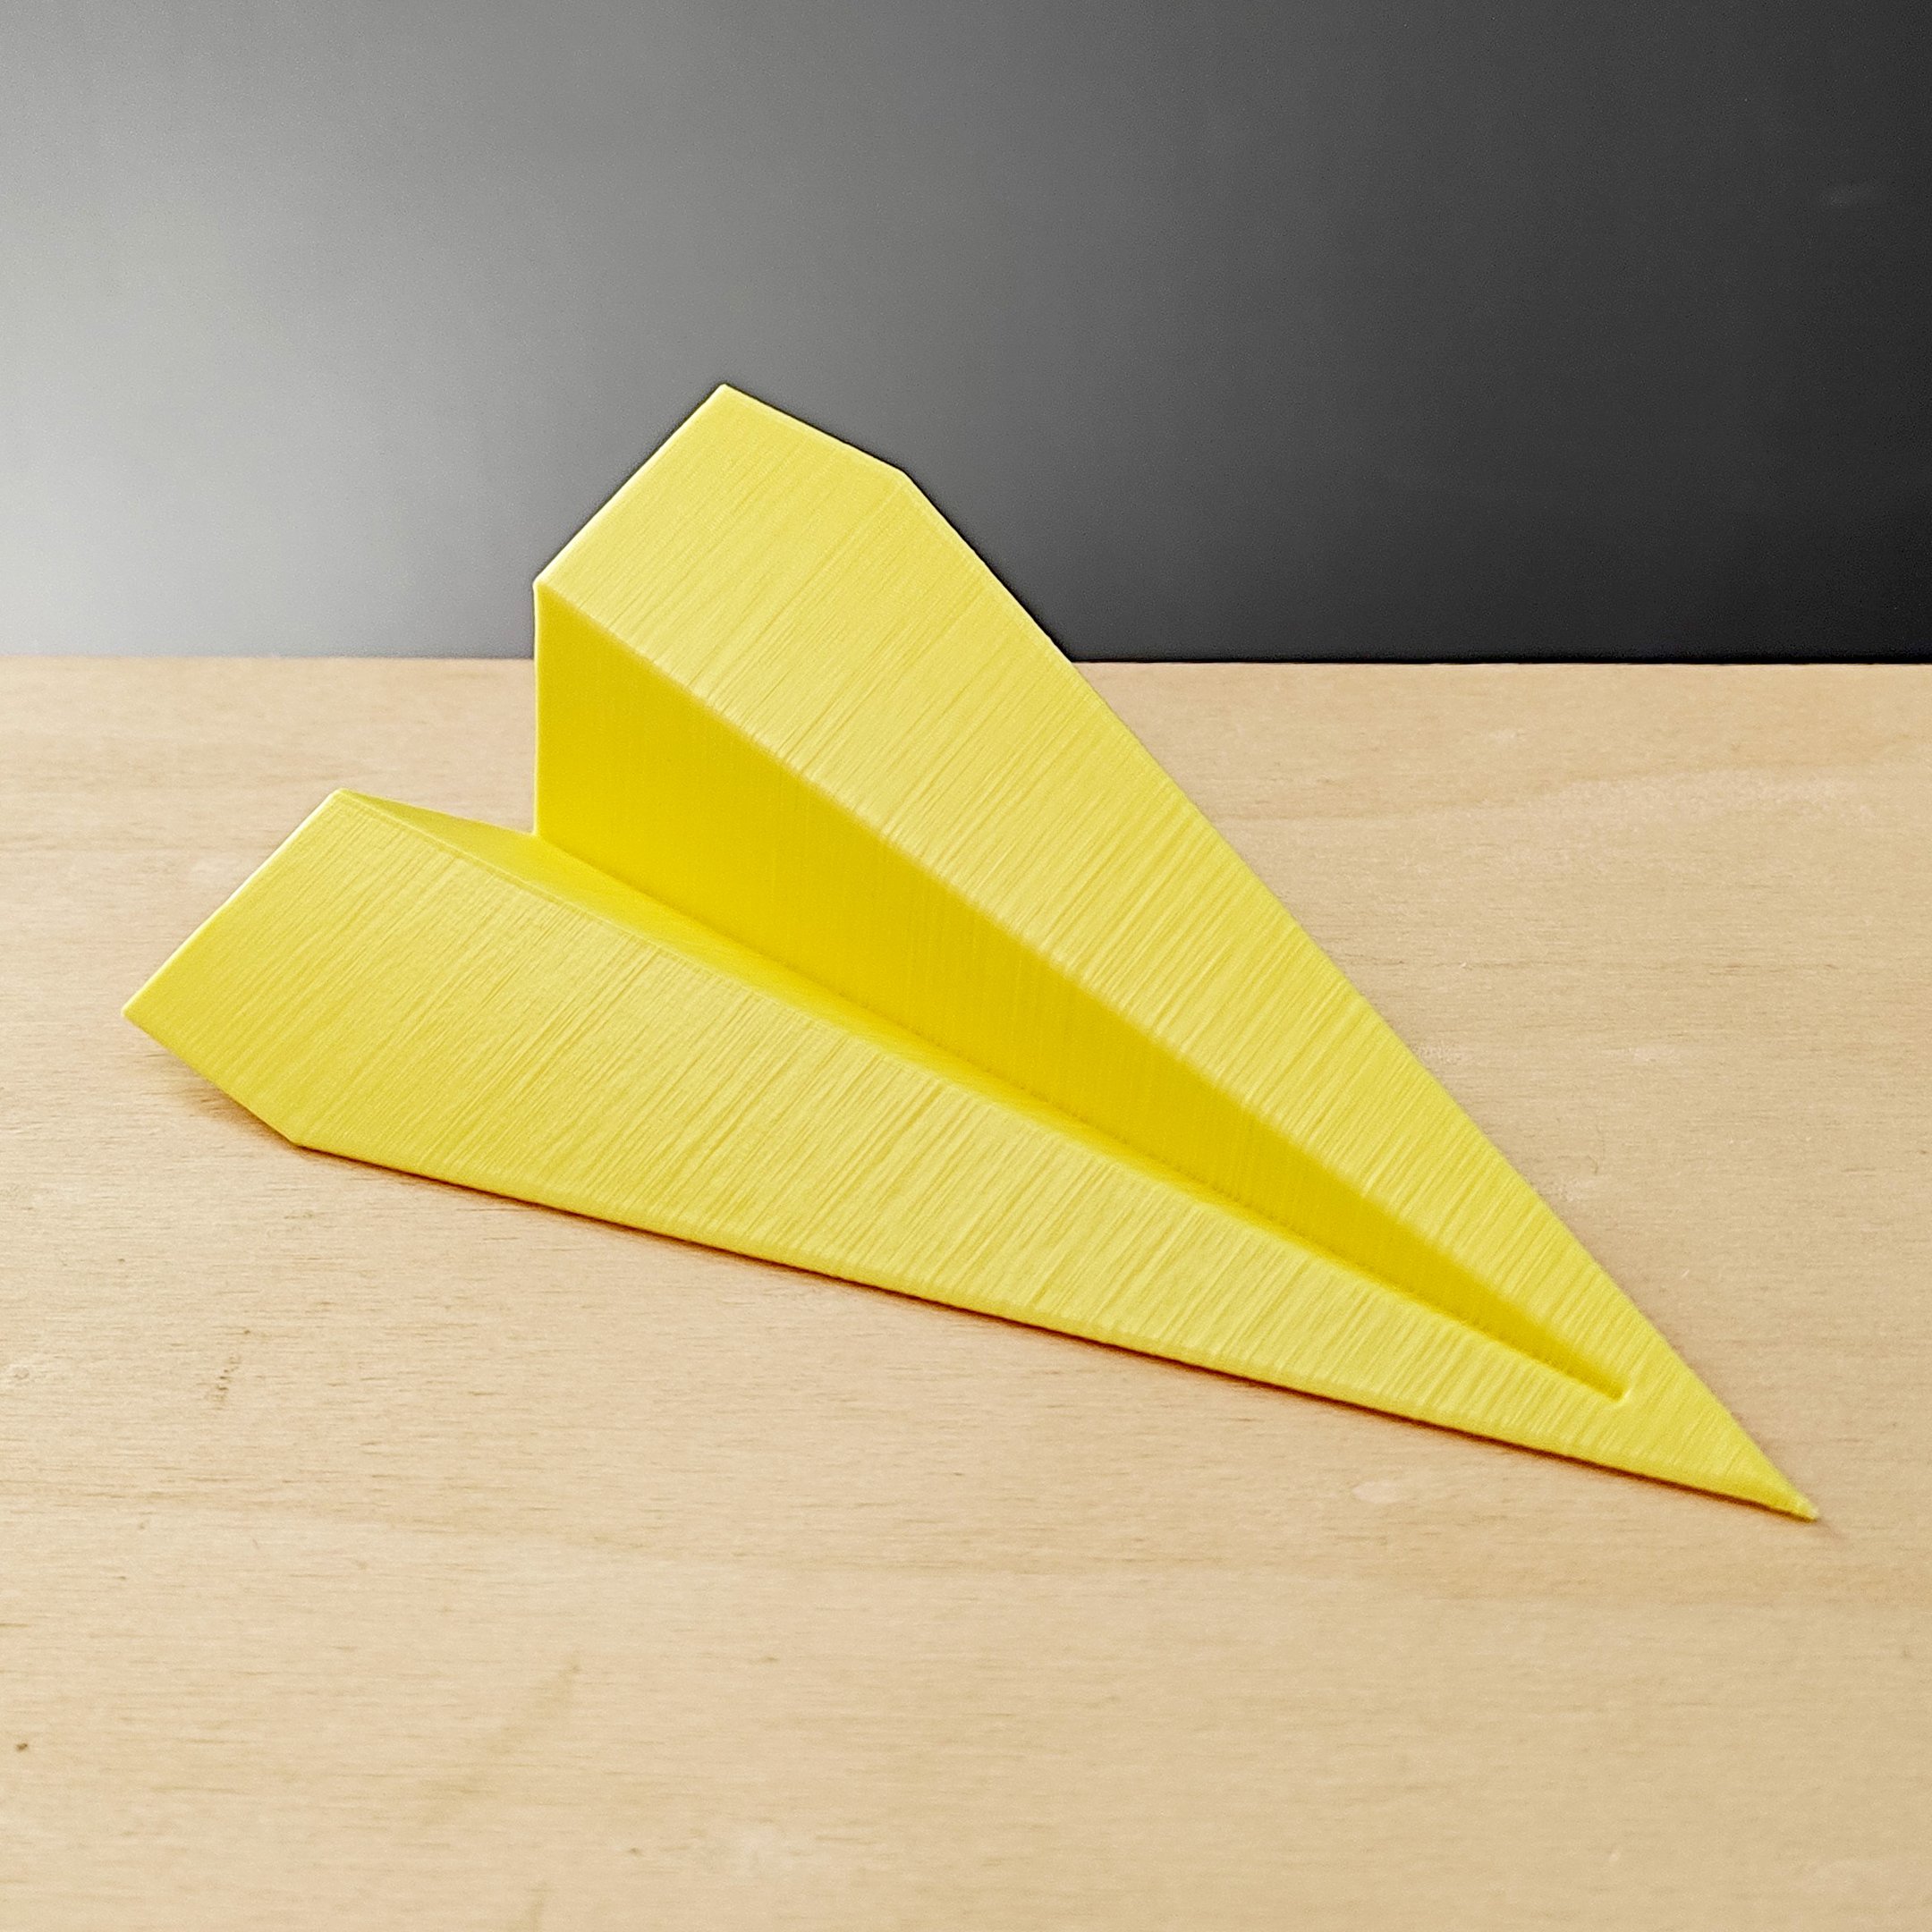 Estatueta Avião Origami P - 13,5cm comp. - Toque 3D:Amarelo - 1